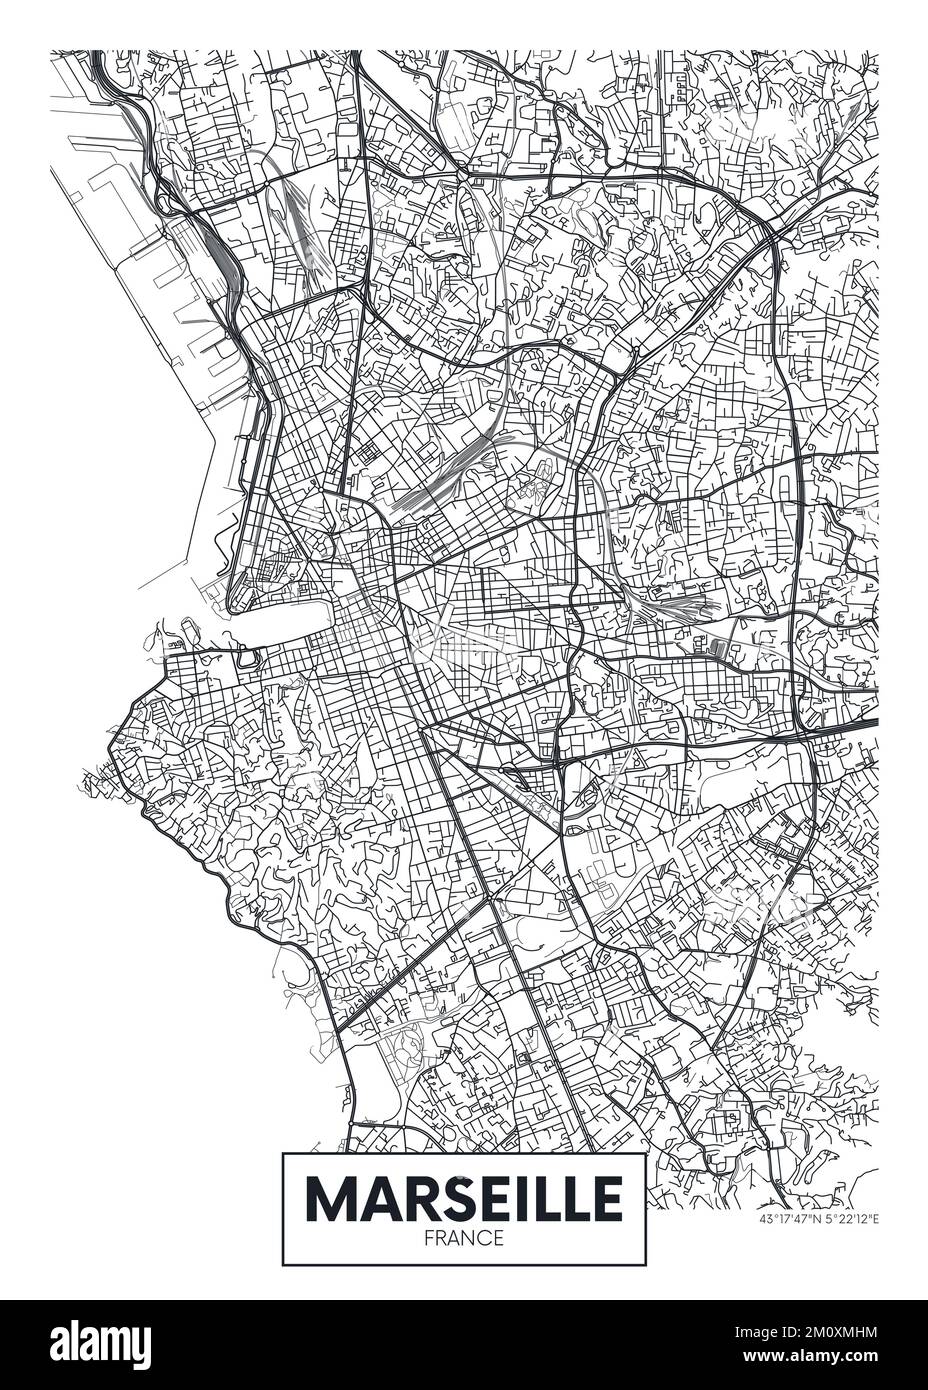 Plan de la ville de Marseille, design poster vecteur de voyage Illustration de Vecteur